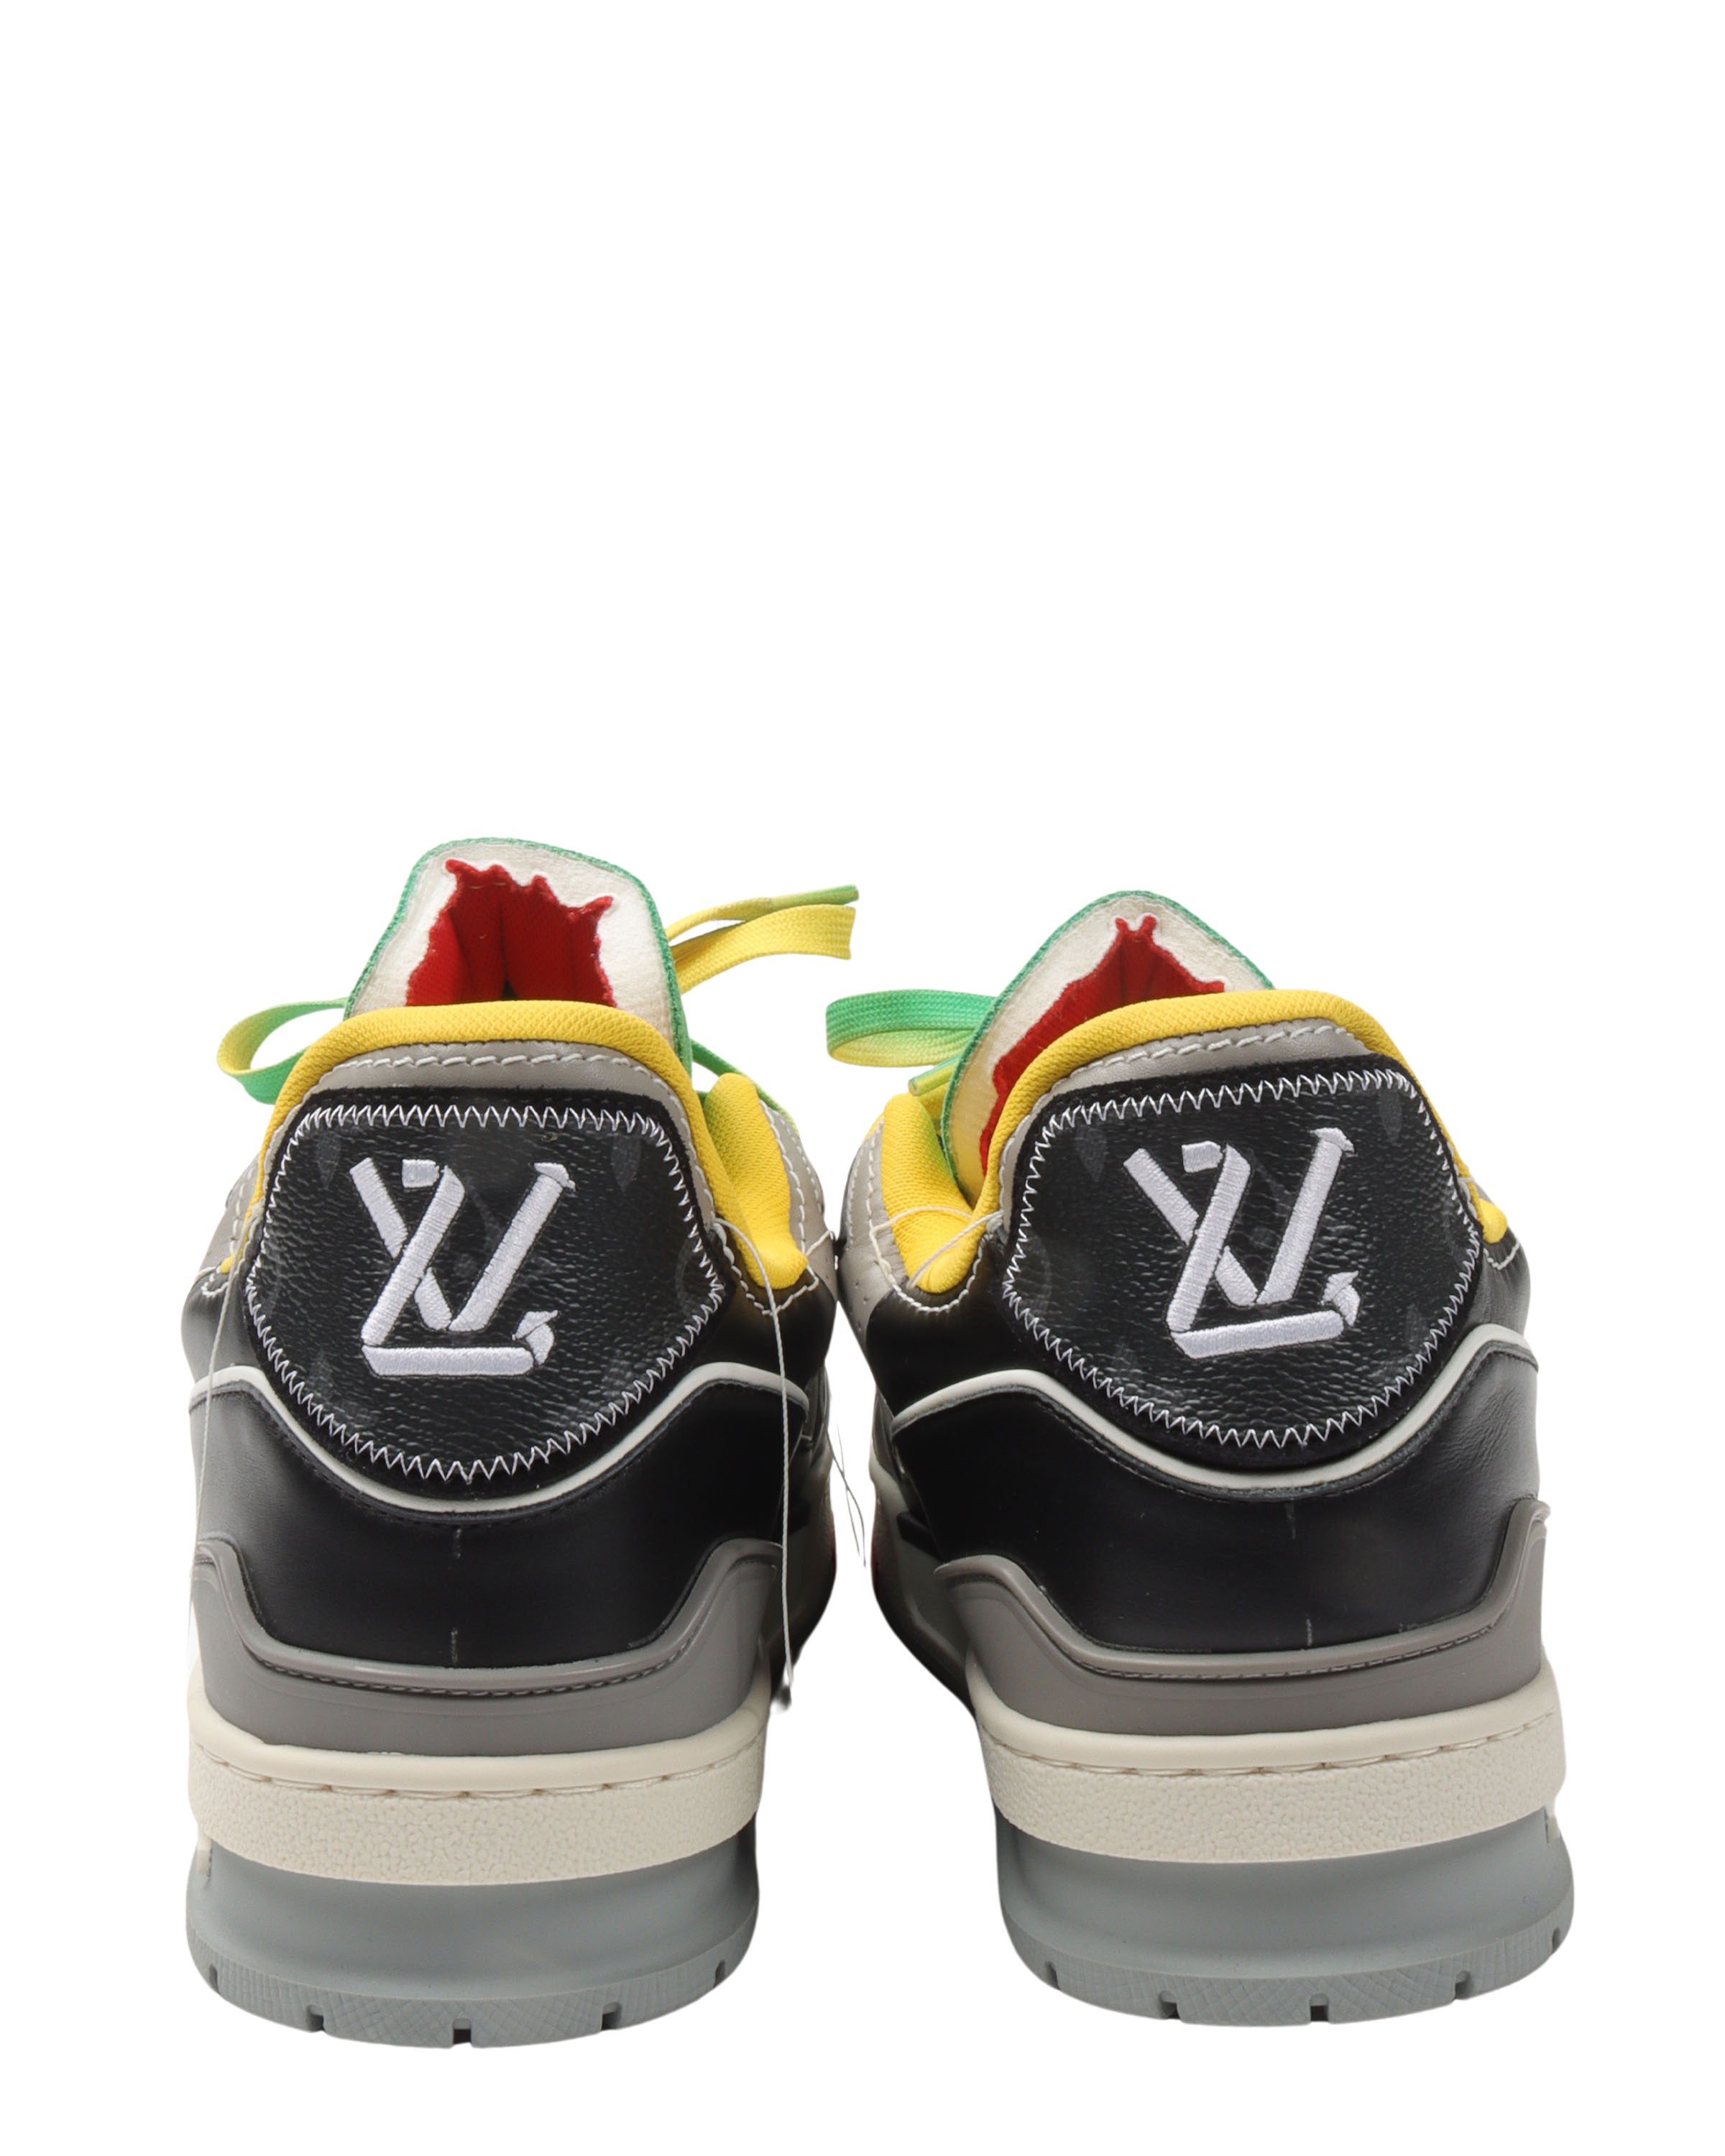 SS21 LV Trainer Sneaker